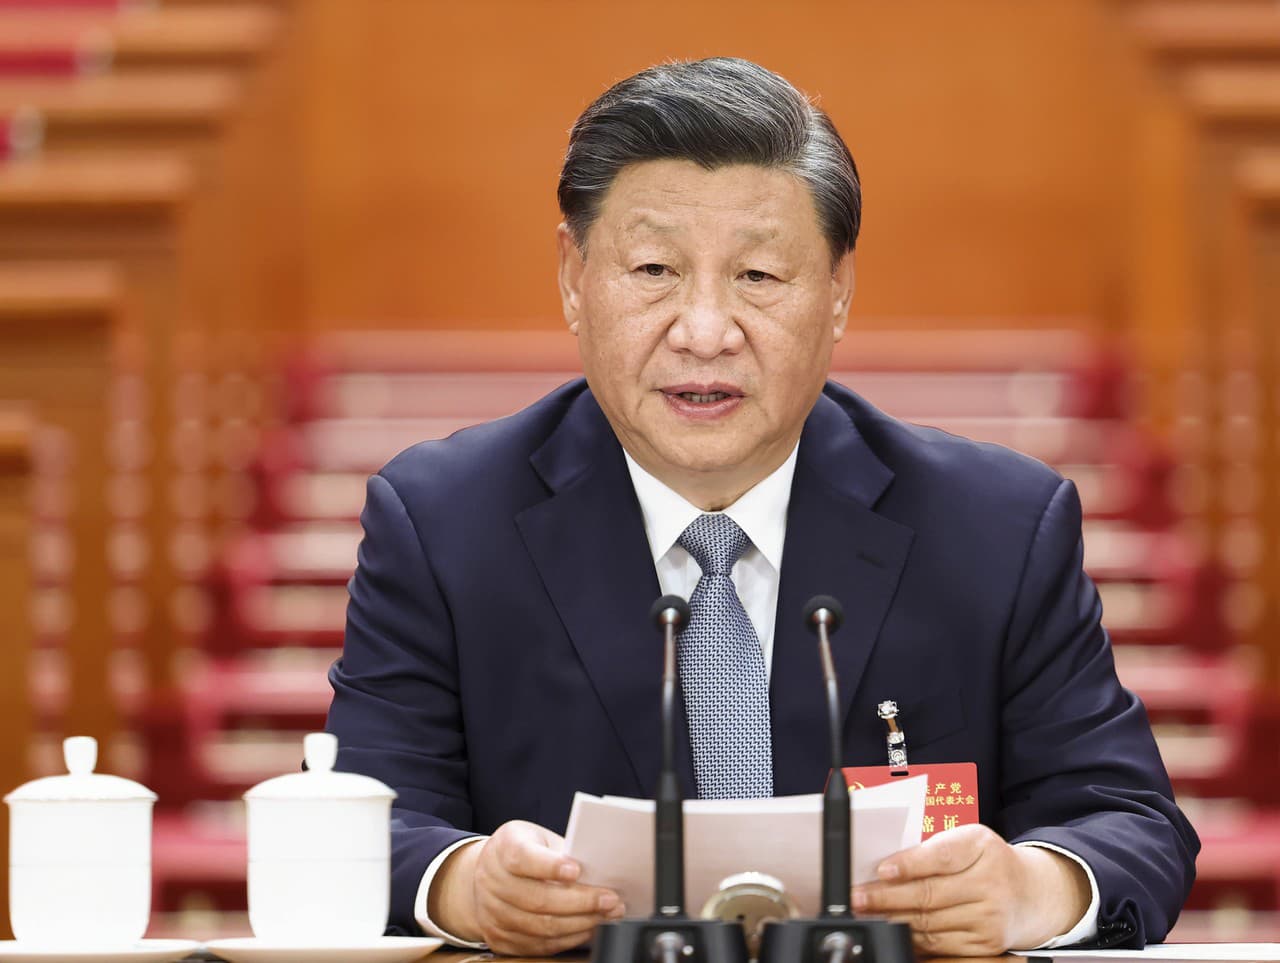 Na snímke čínsky prezident Si Ťin-pching